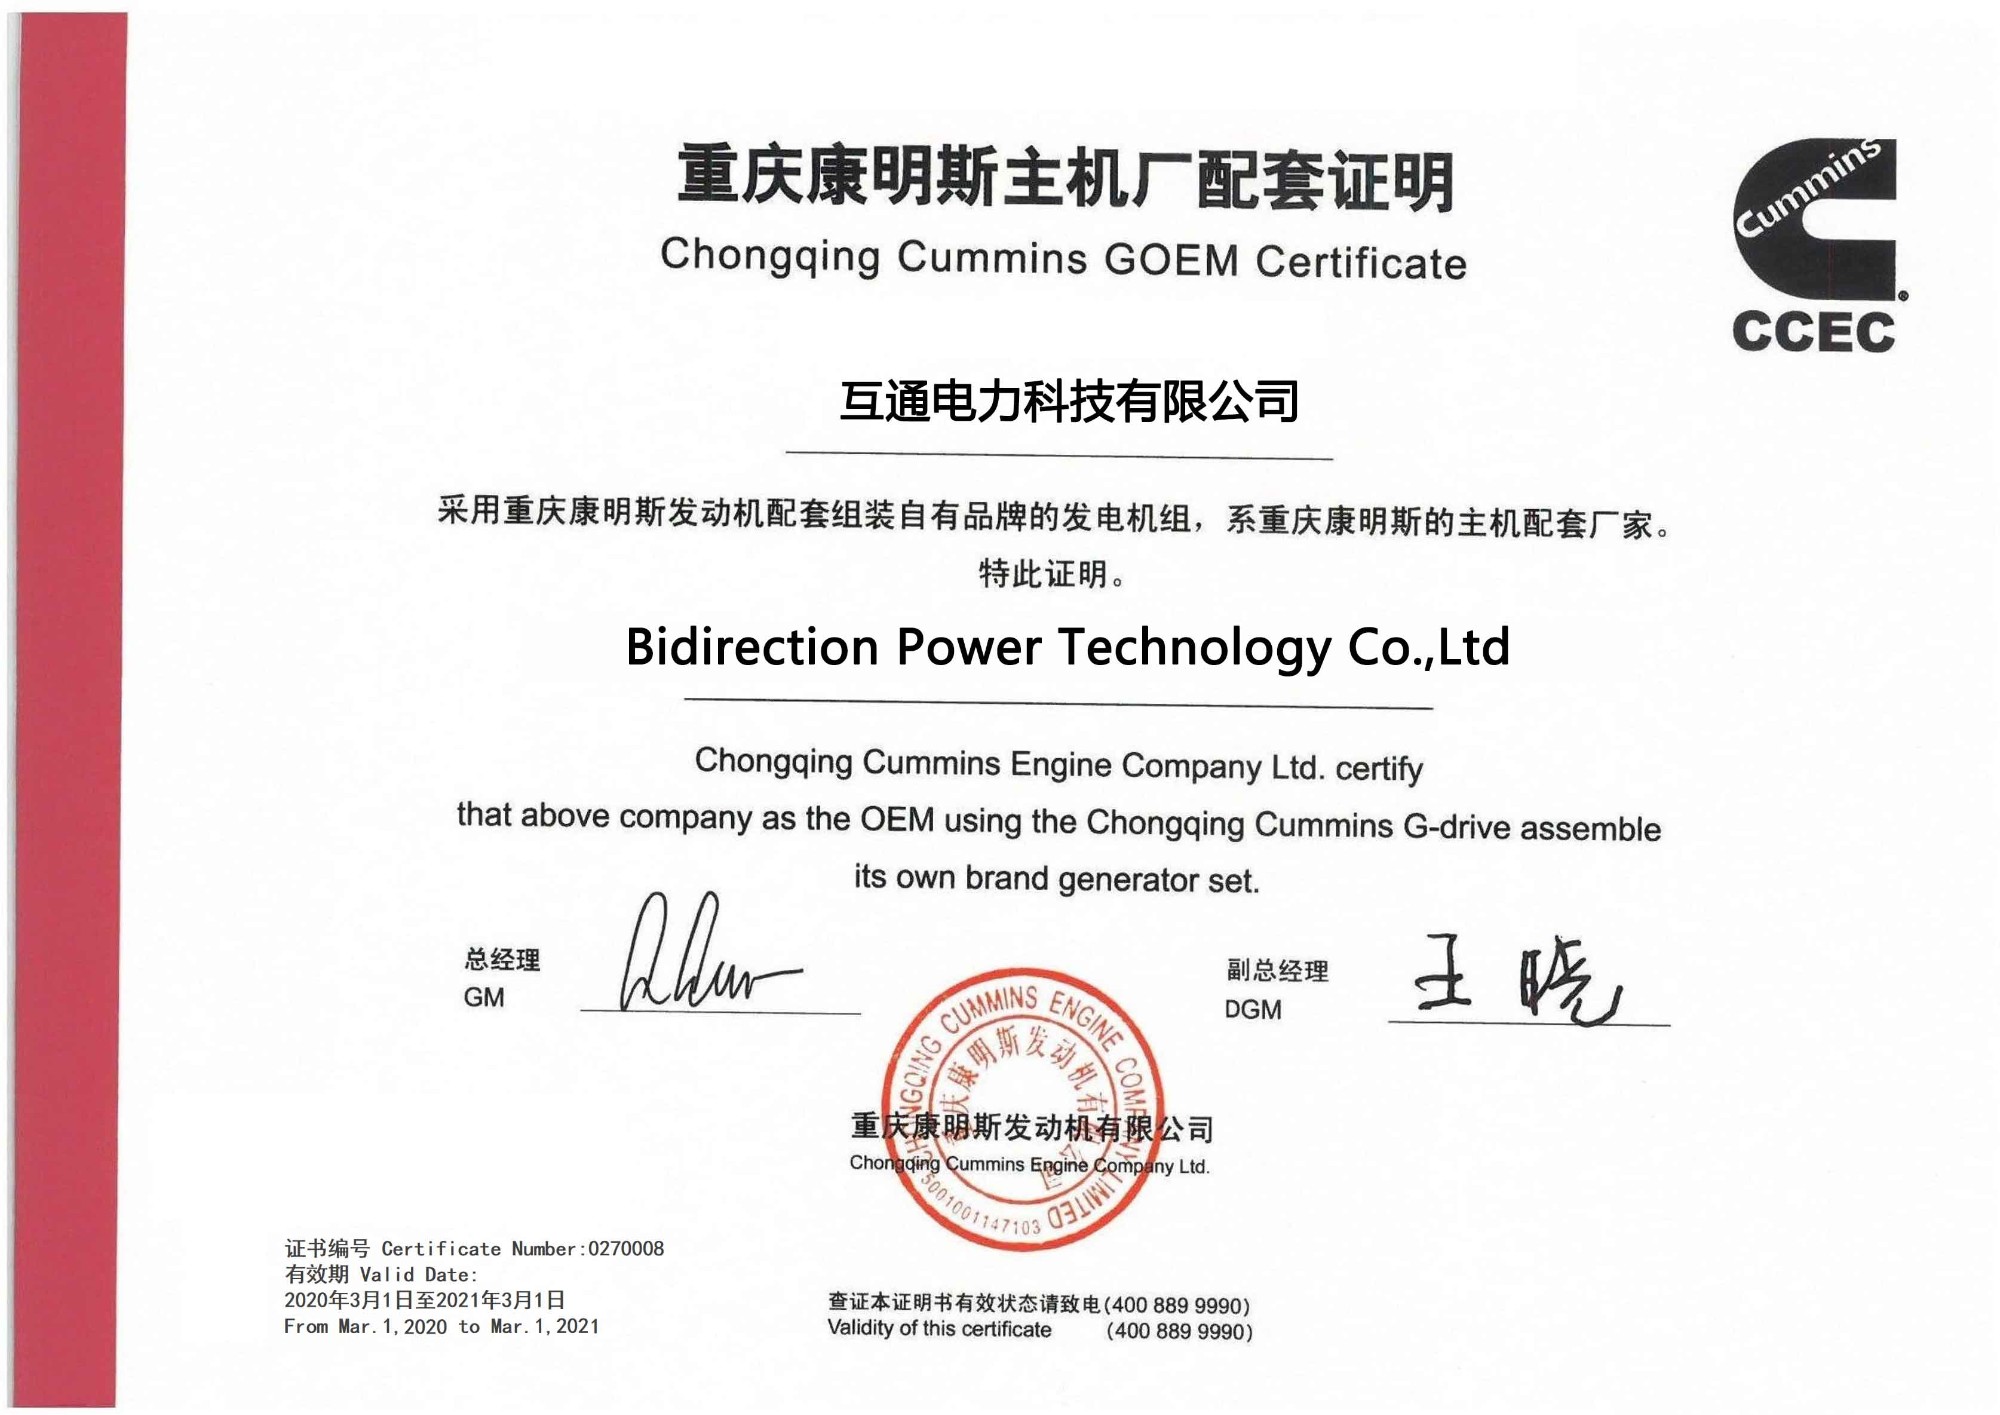 Bidirection Power Technology Co., Ltd는 충칭 커민스 GOEM 인증서에 의해 승인되었습니다.